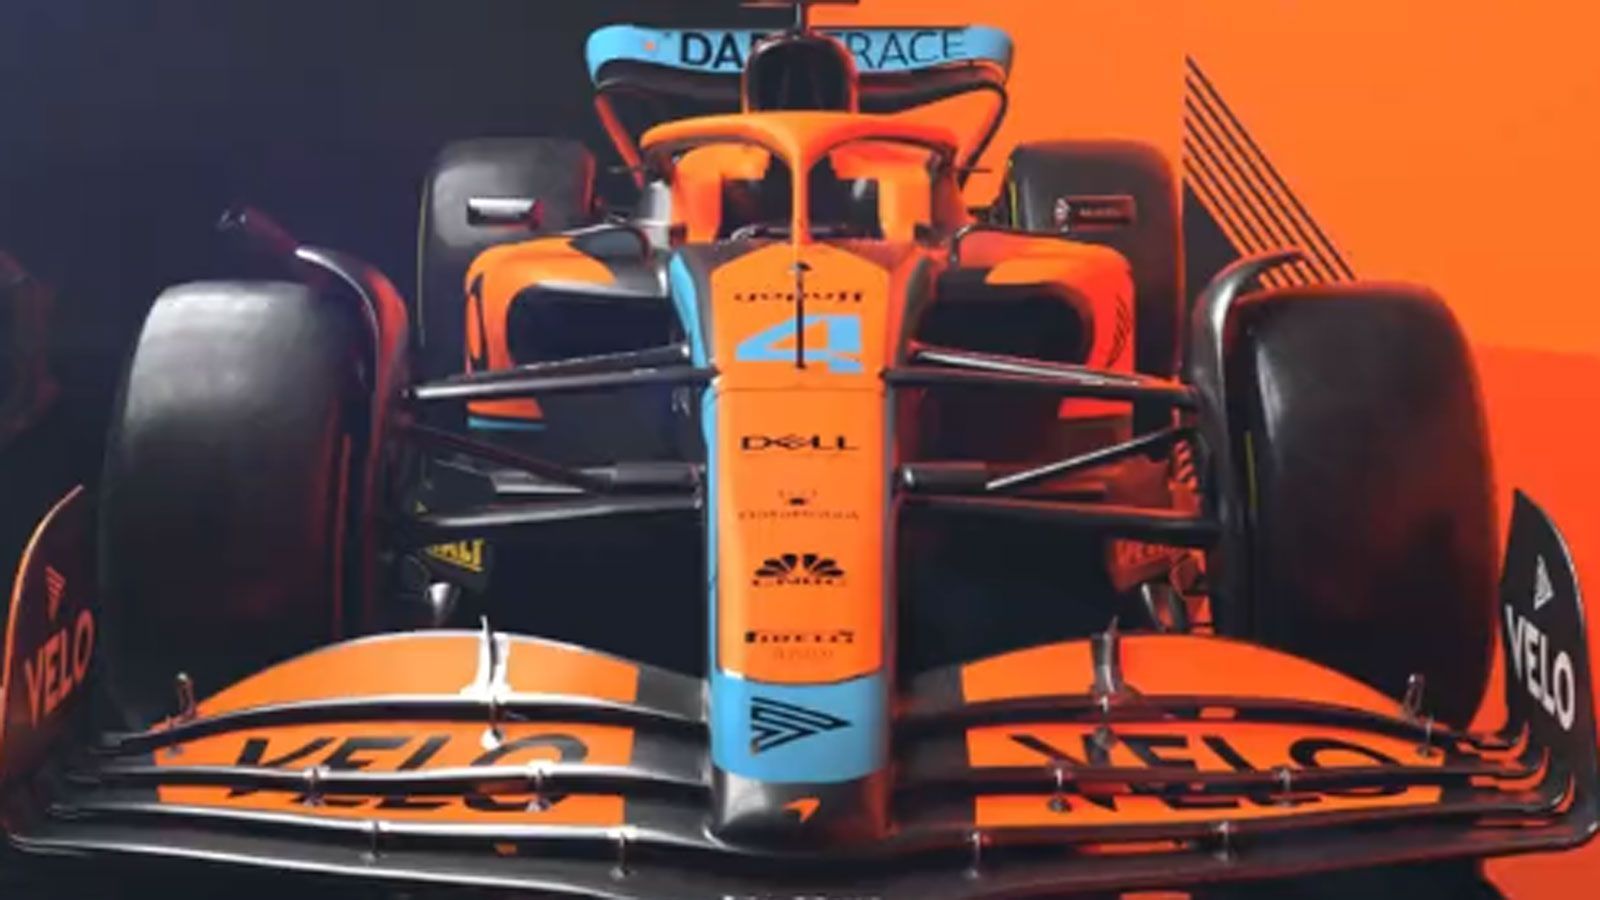 
                <strong>McLaren MCL36</strong><br>
                So sieht der McLaren MCL36 aus. Wie schon zuletzt dominiert die Farbe orange - laut Team: Papaya. Verändert haben sich die Blautöne, die heller ausfallen und ins Babyblau gehen. Der Frontflügel läuft zur Mitte spitzer zu, die Nase flacht nicht so steil ab wie beim Vorgängermodell. Zak Brown als Geschäftsführer von McLaren Racing frohlockt: "Unser Formel-1-Team entwickelt sich unter der Führung von (Teamchef) Andreas Seidl von Jahr zu Jahr weiter und die neue Regel-Ära bietet dem Team eine echte Möglichkeit."
              